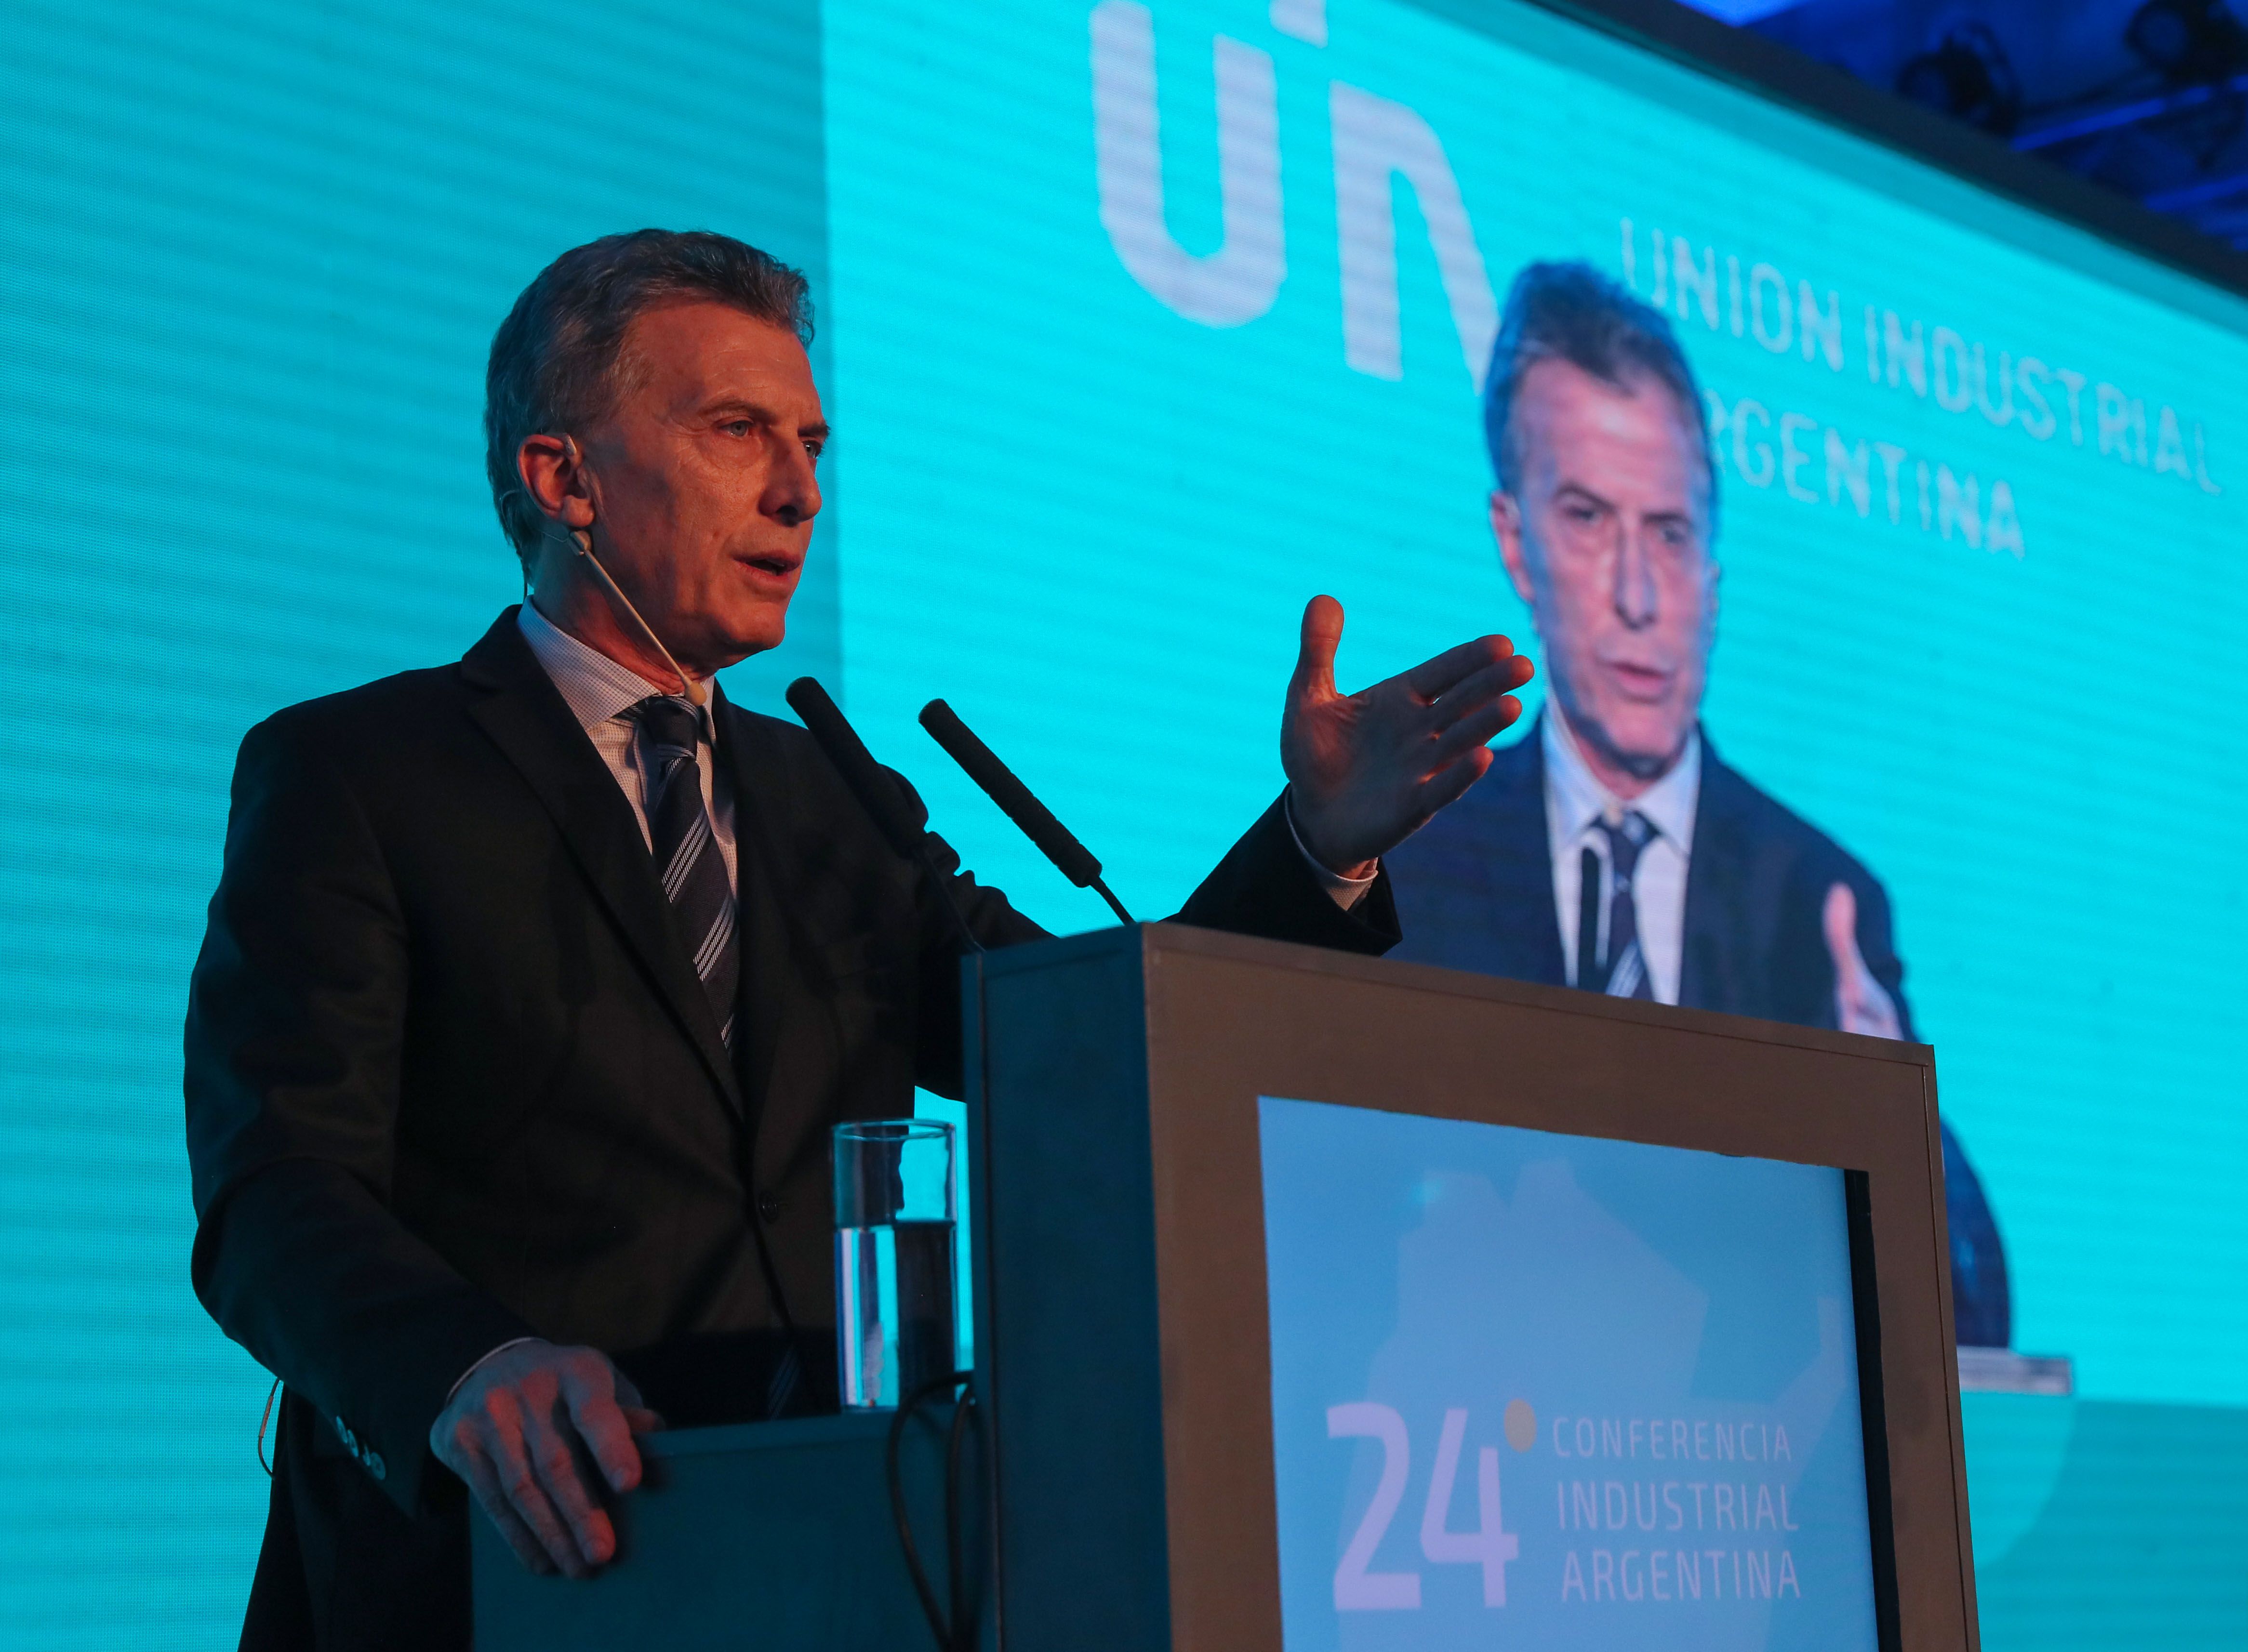 El presidente argentino, Mauricio Macri, da un discurso en el cierre de la vigésimo cuarta edición de la Conferencia Industrial Argentina